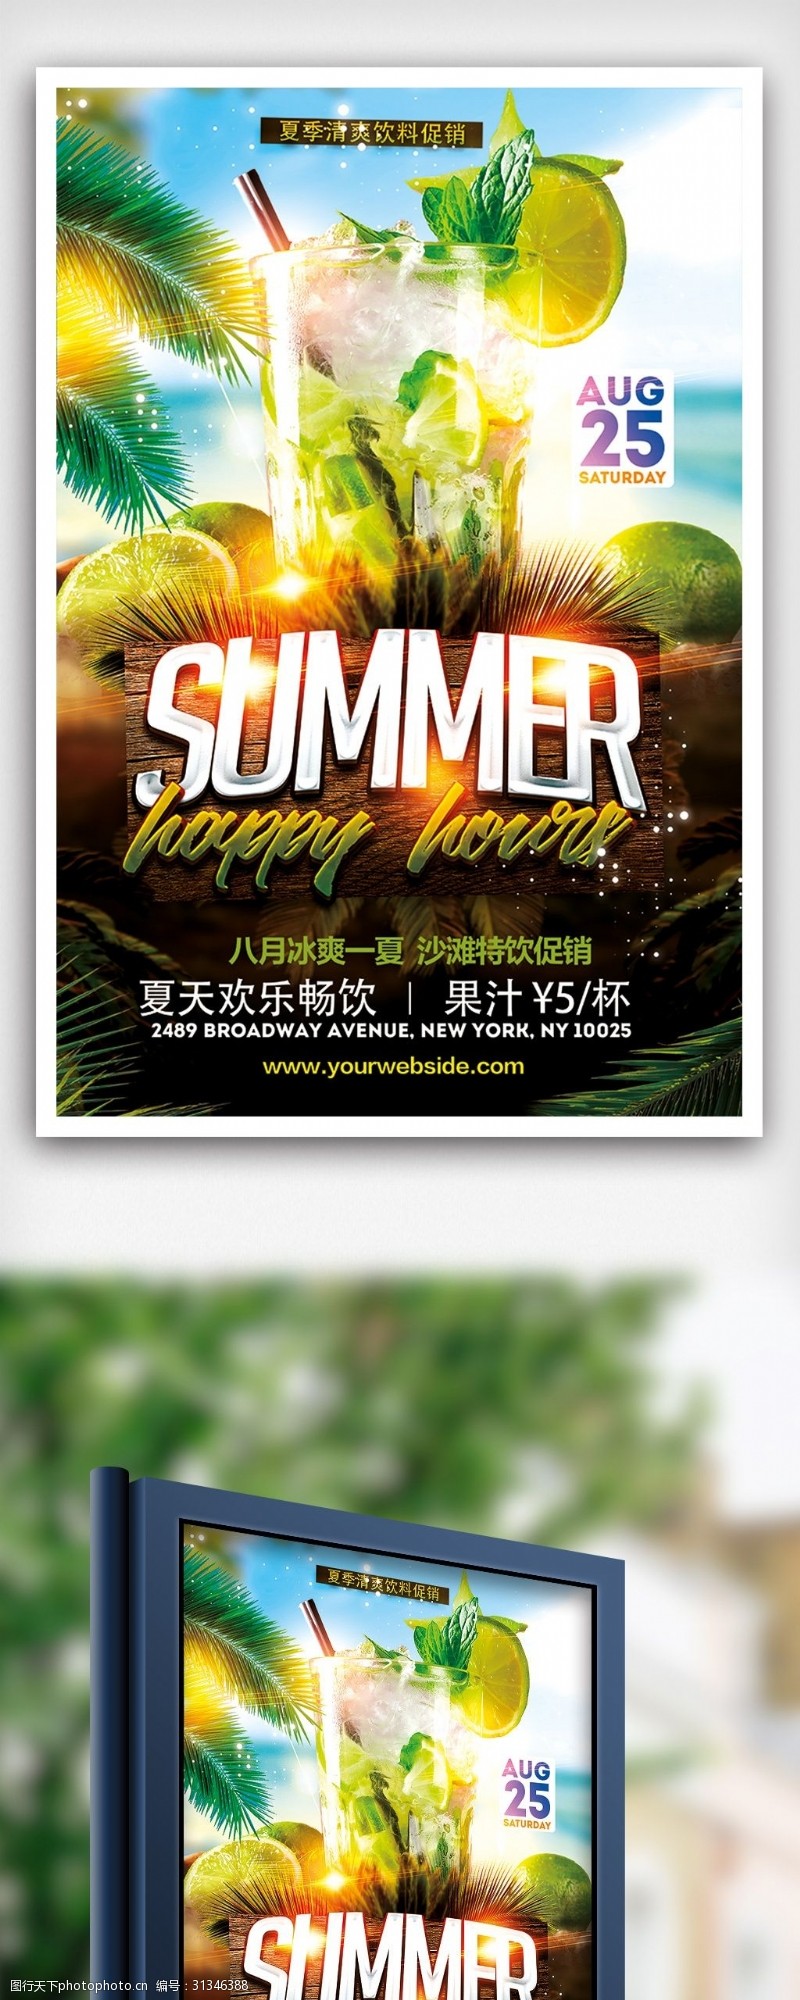 特价图片免费下载夏季清爽饮料特价促销海报设计